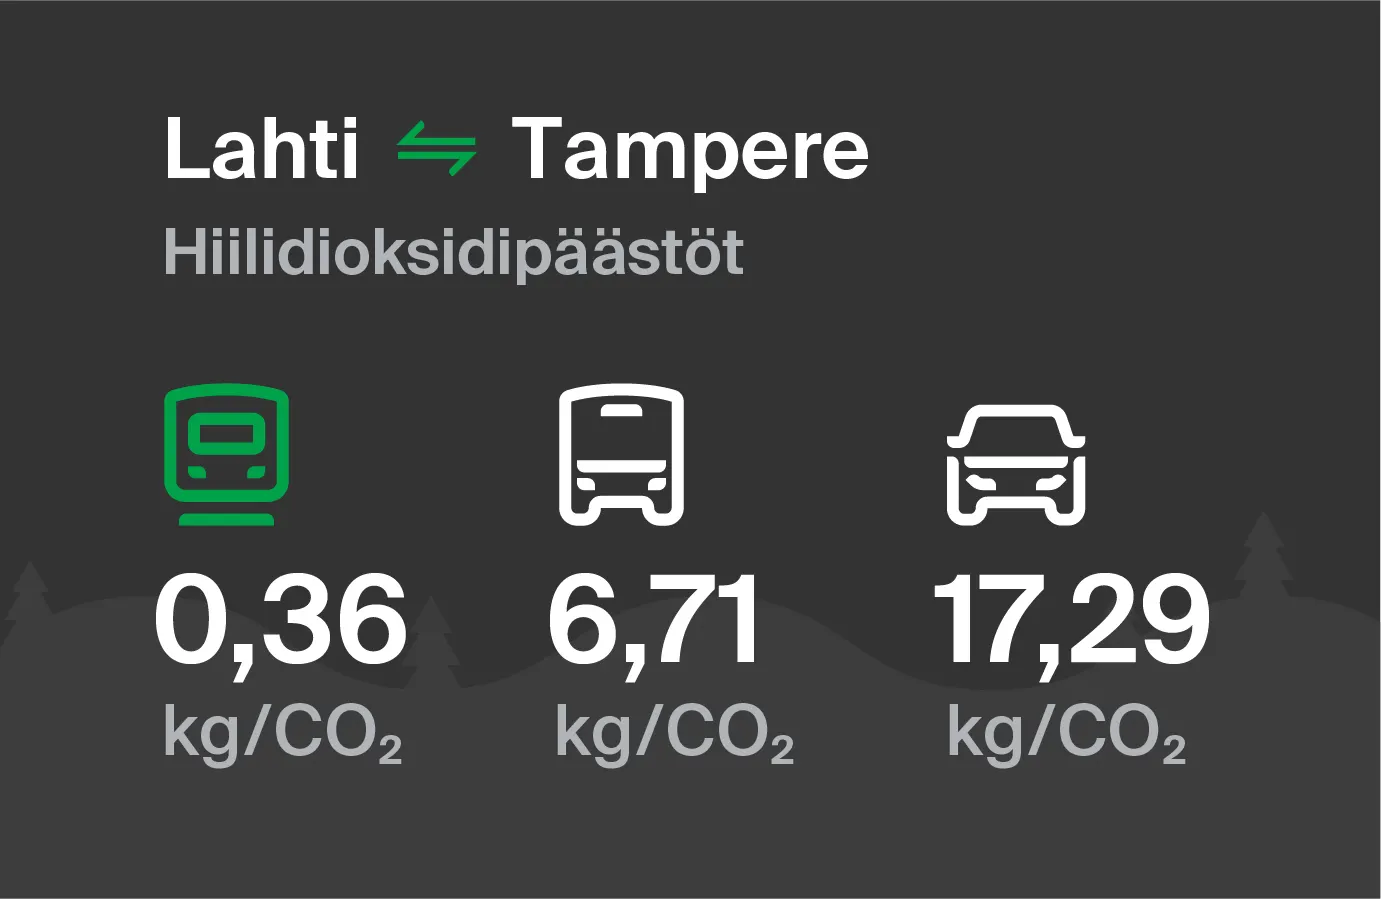 Hiilidioksidipäästöt Lahdesta Tampereelle eri kulkuvälinemuodoilla: junalla 0,36 kg/CO2, bussilla 6,71 kg/CO2 ja autolla 17,29 kg/CO2.